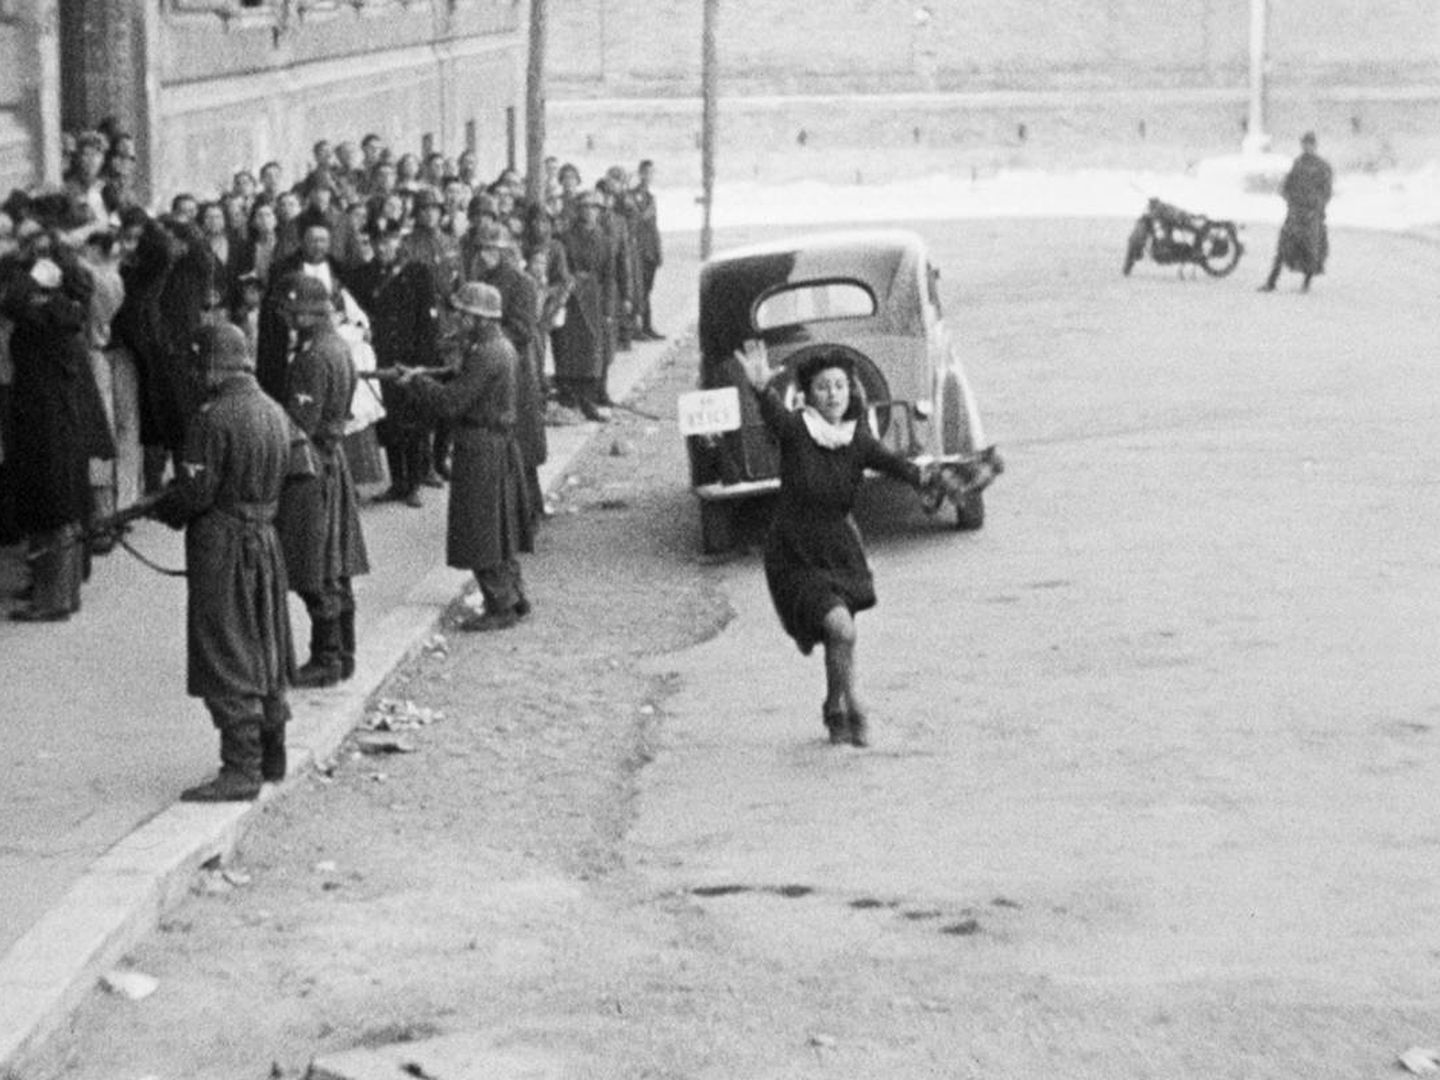 Anna Magnani en un fotograma de 'Roma città aperta', Roberto Rossellini, 1945.